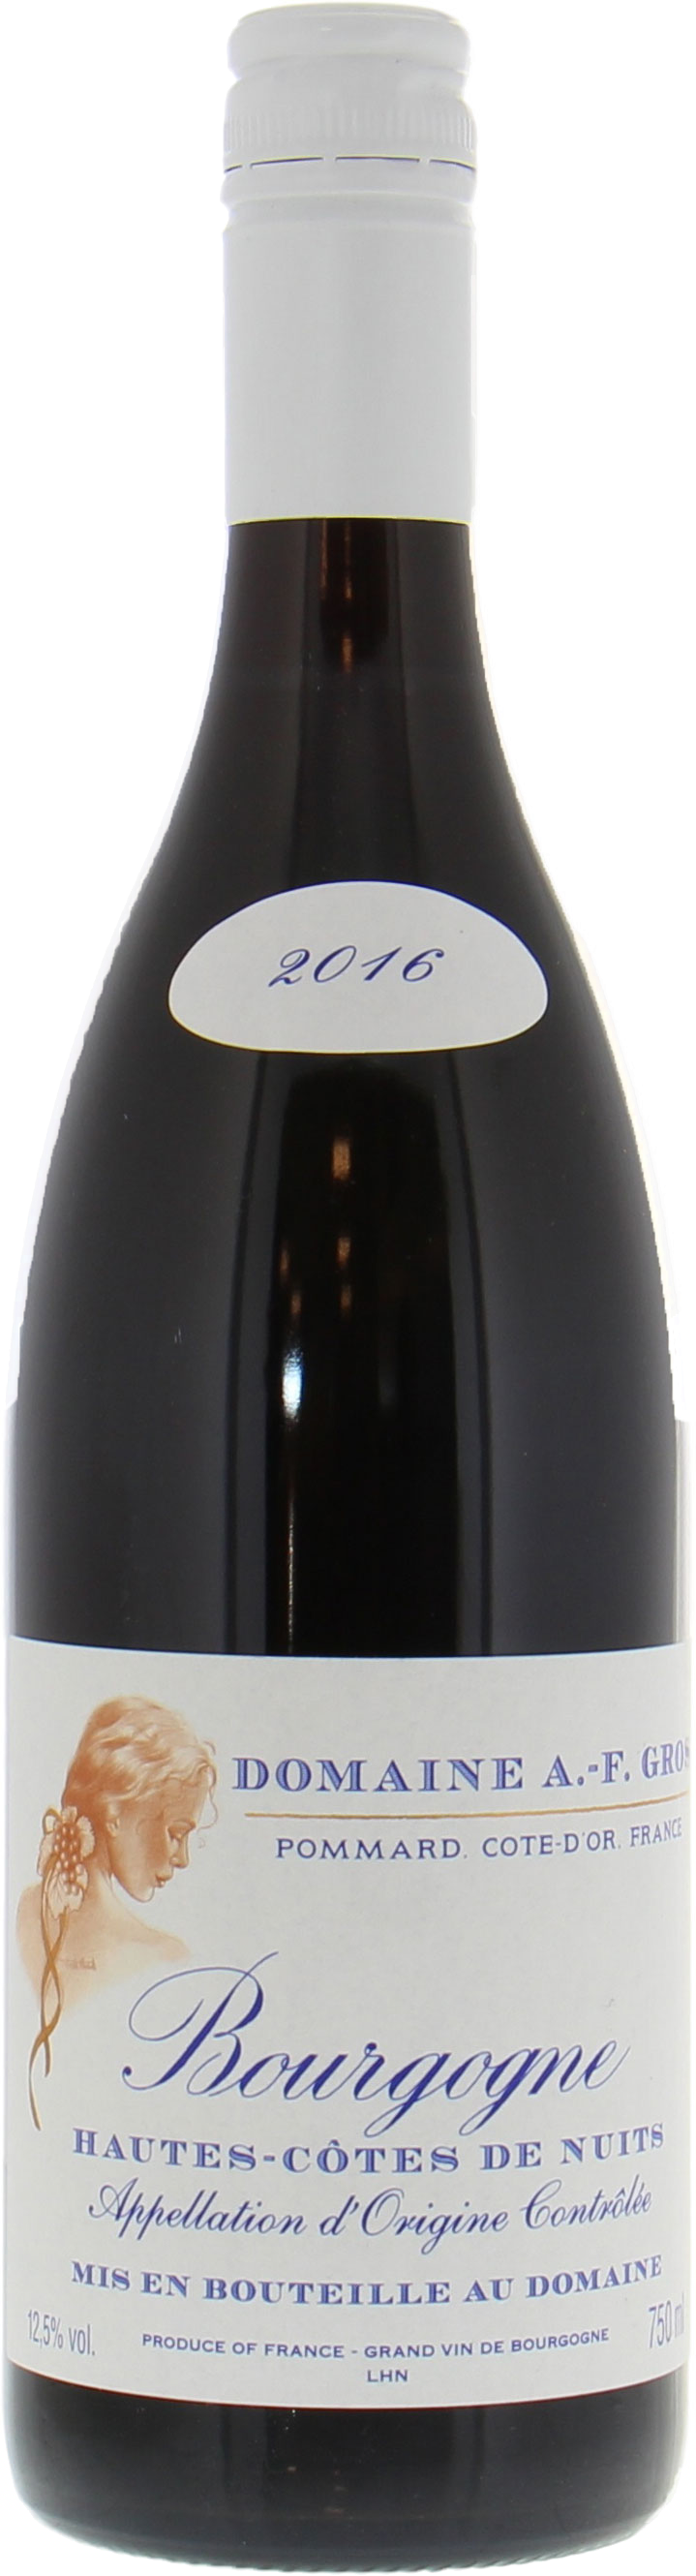 Bottle shot of 2017 Hautes Cotes de Nuits